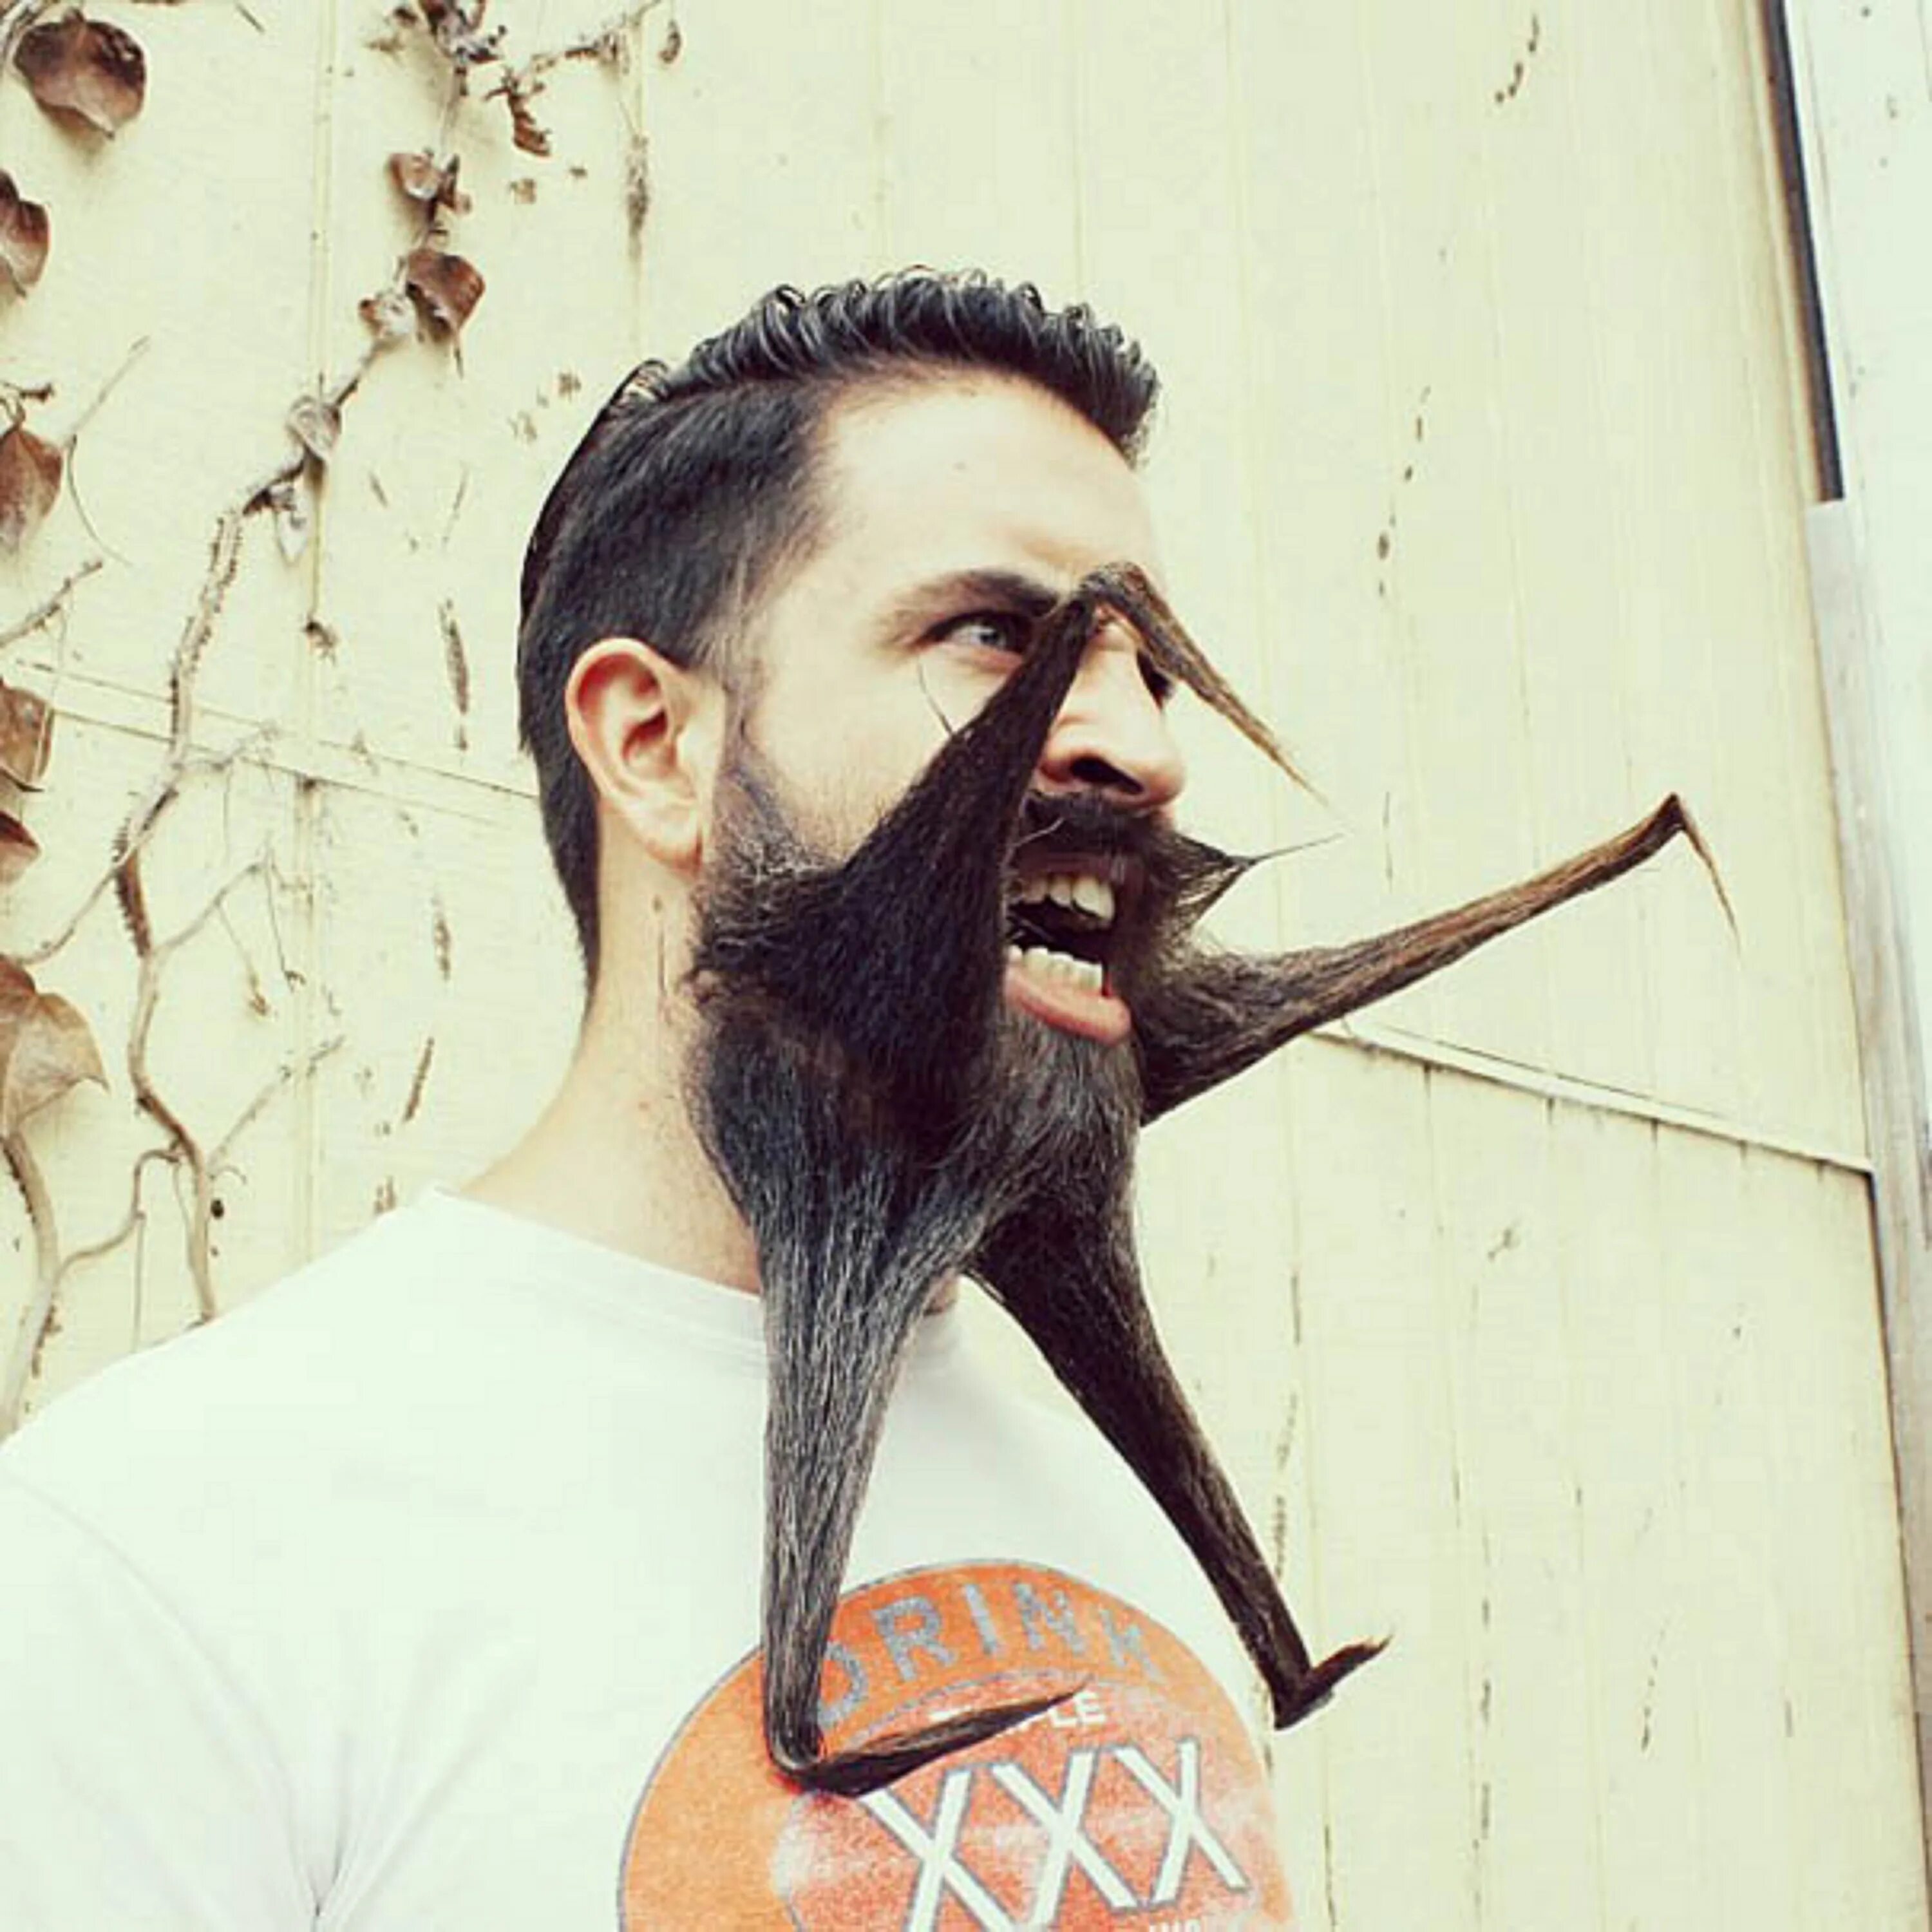 Самый смешной мужчина. Креативная борода. Необычные стрижки бороды. Необычная борода. Смешная борода.